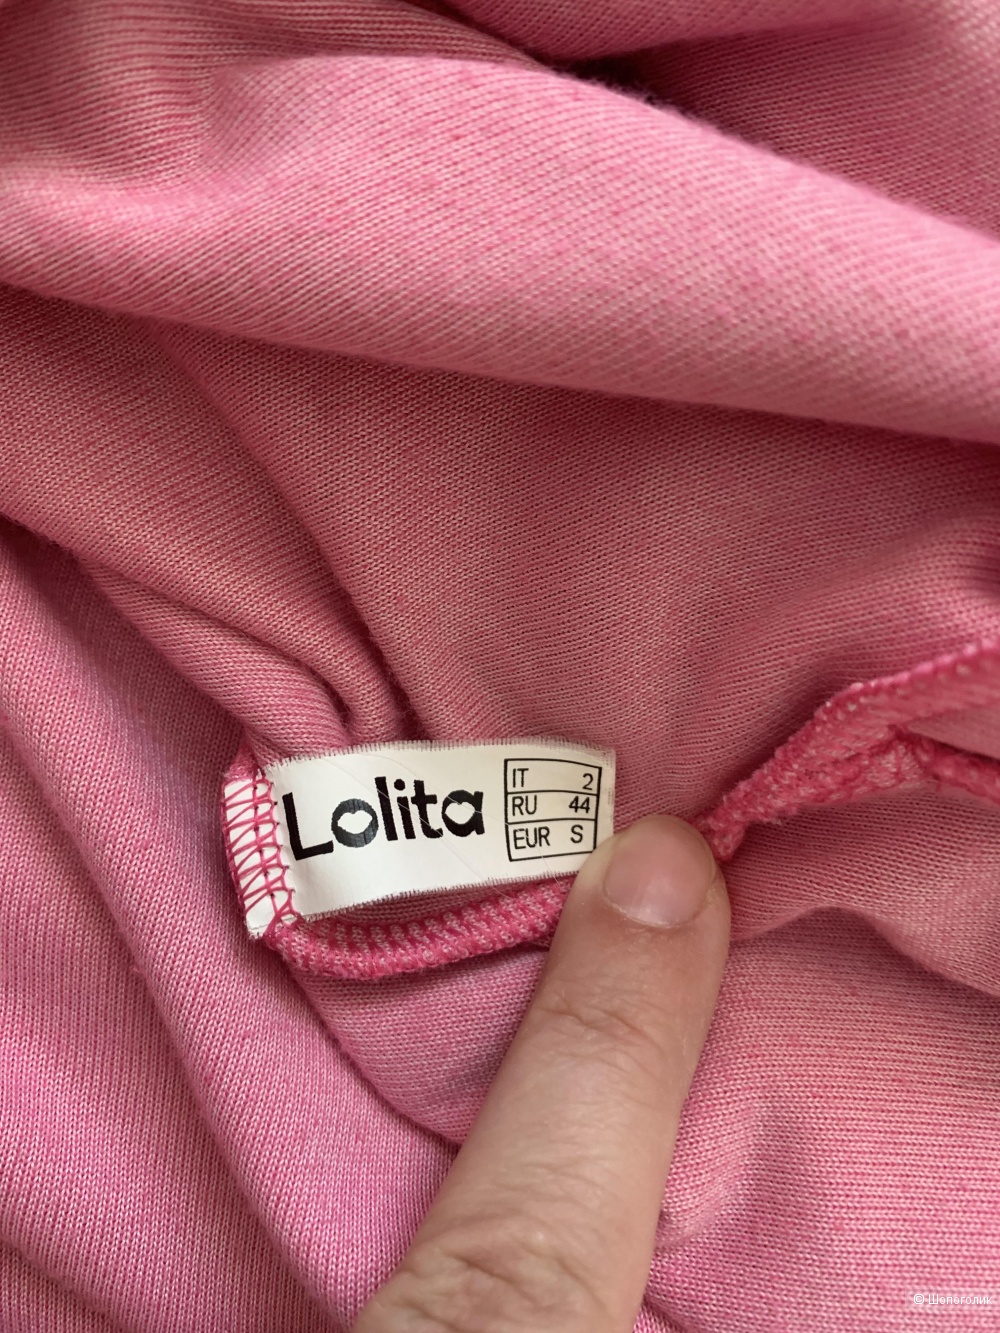 Бархатная толстовка Lolita, р 44